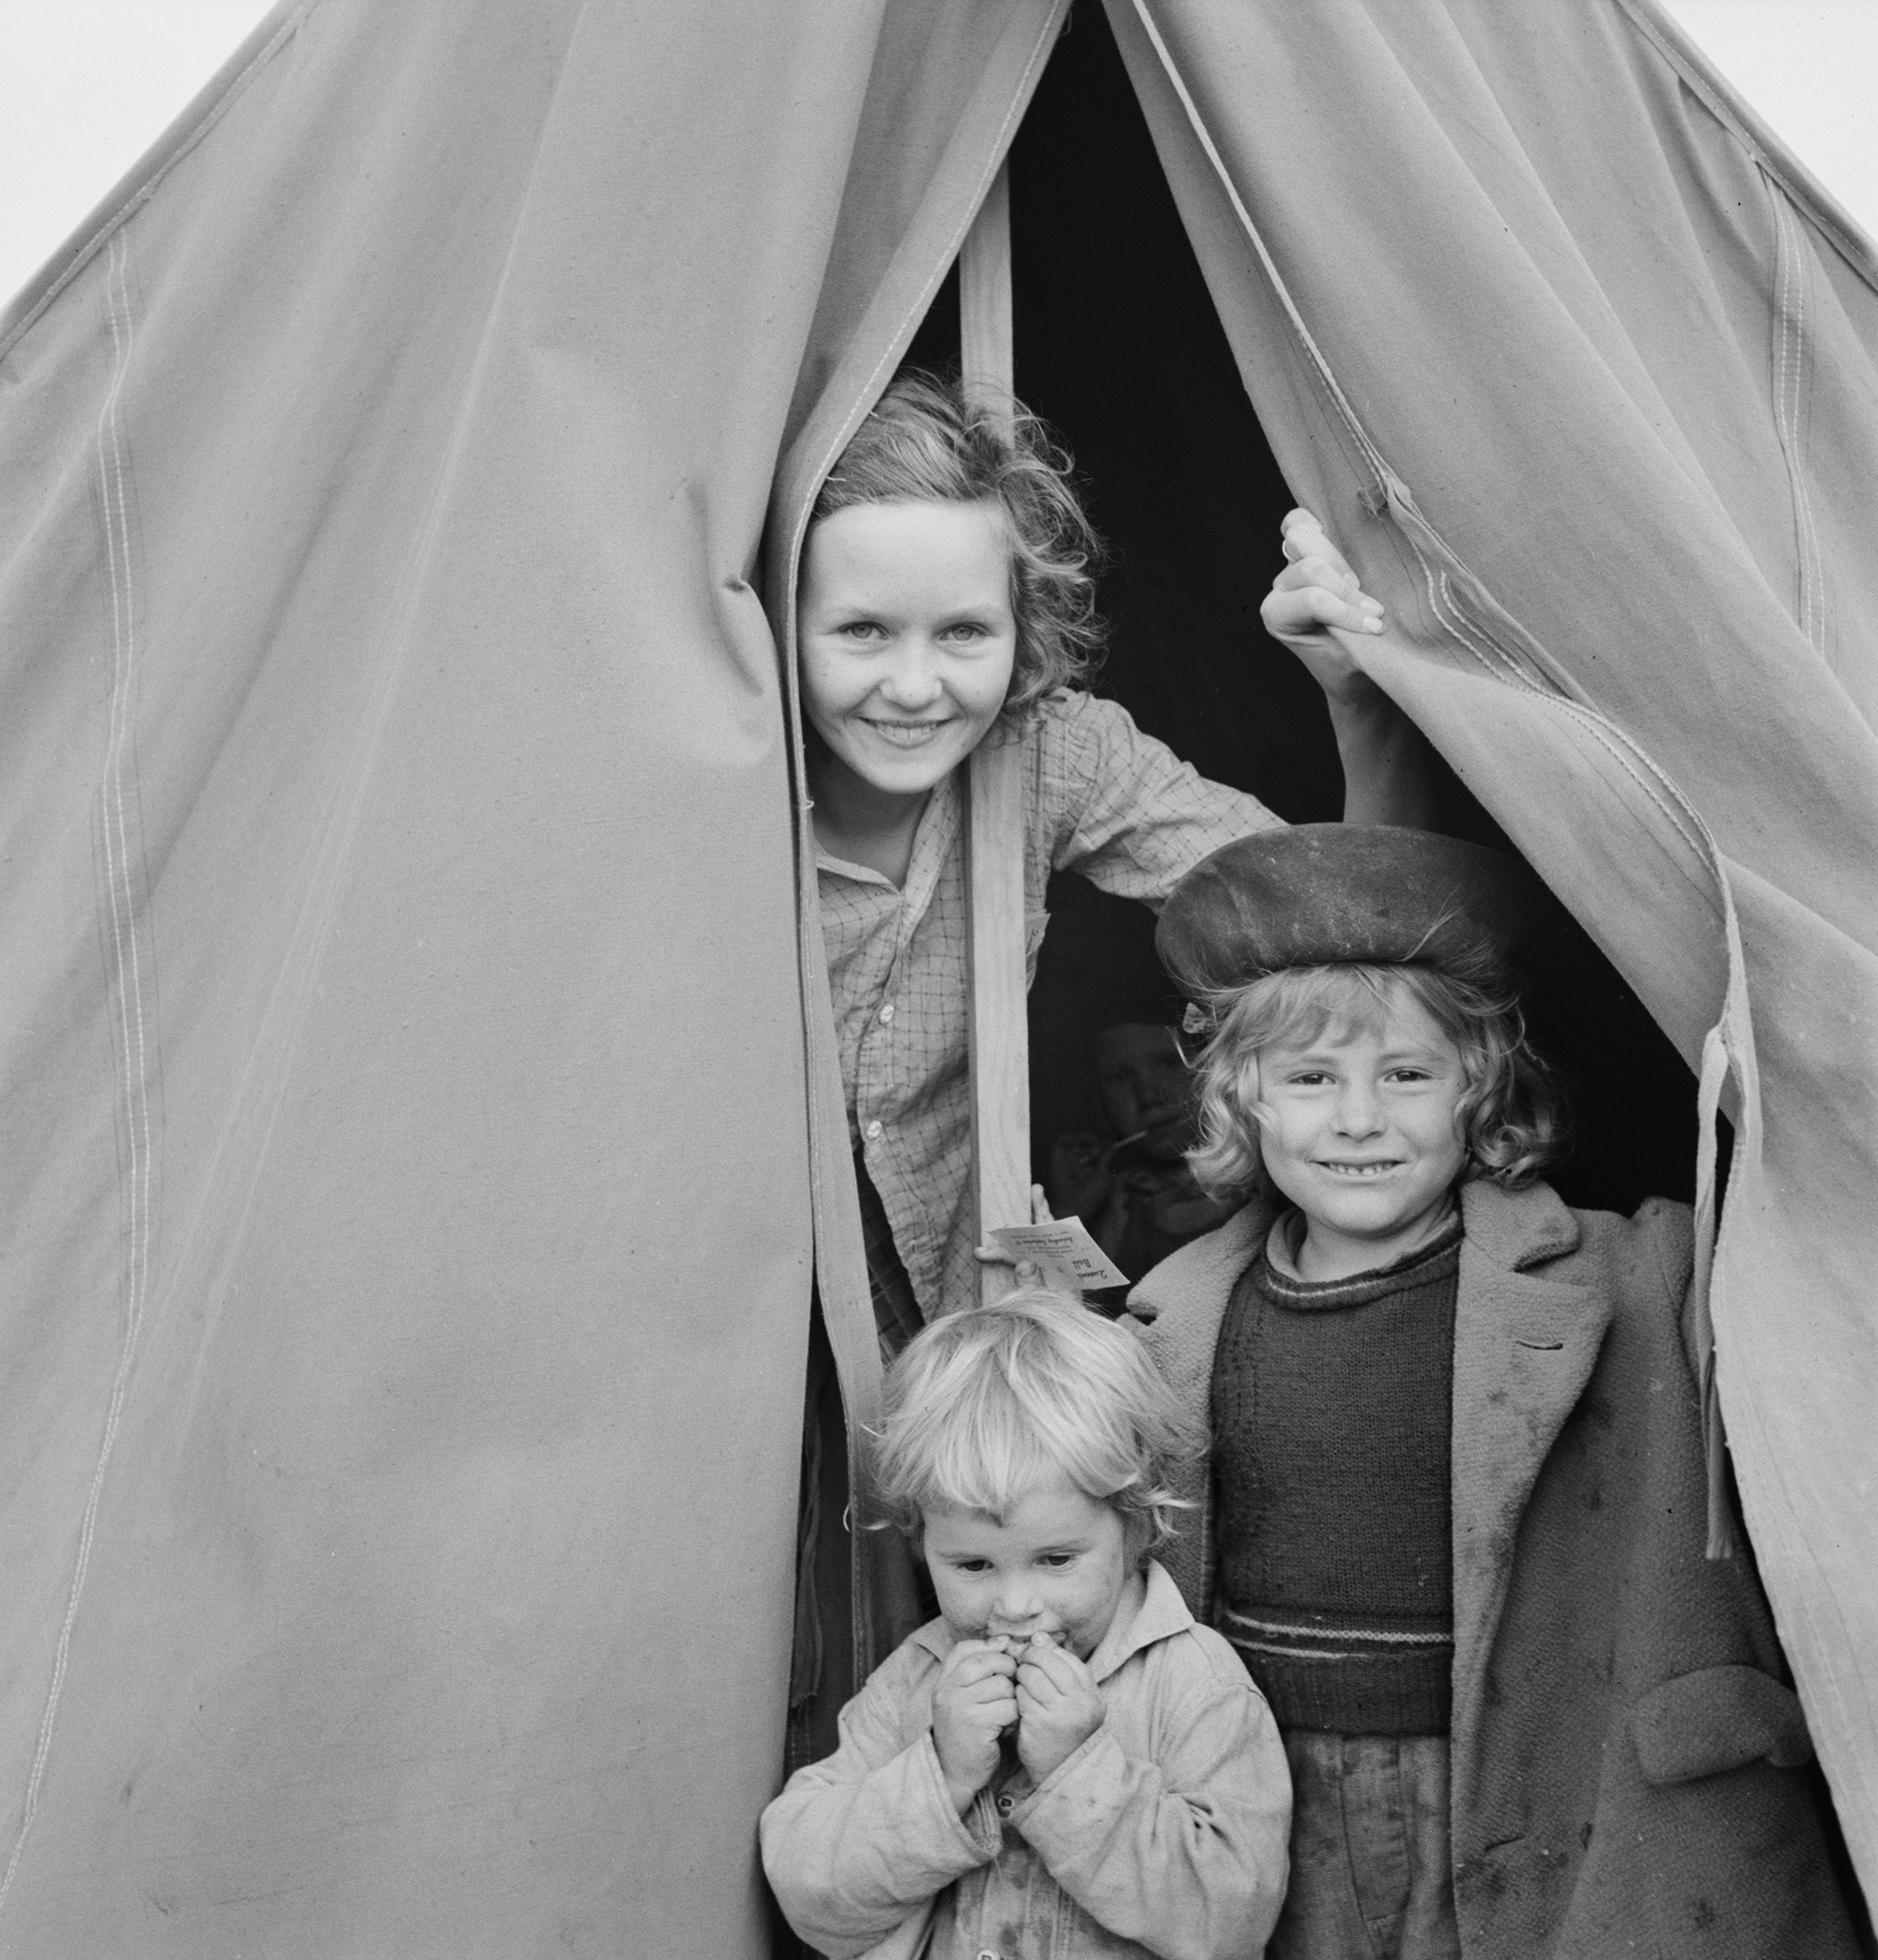 Menekült munkáscsalád gyerekei egy oregoni szálláshely sátrában (fotó: Dorothea Lange)